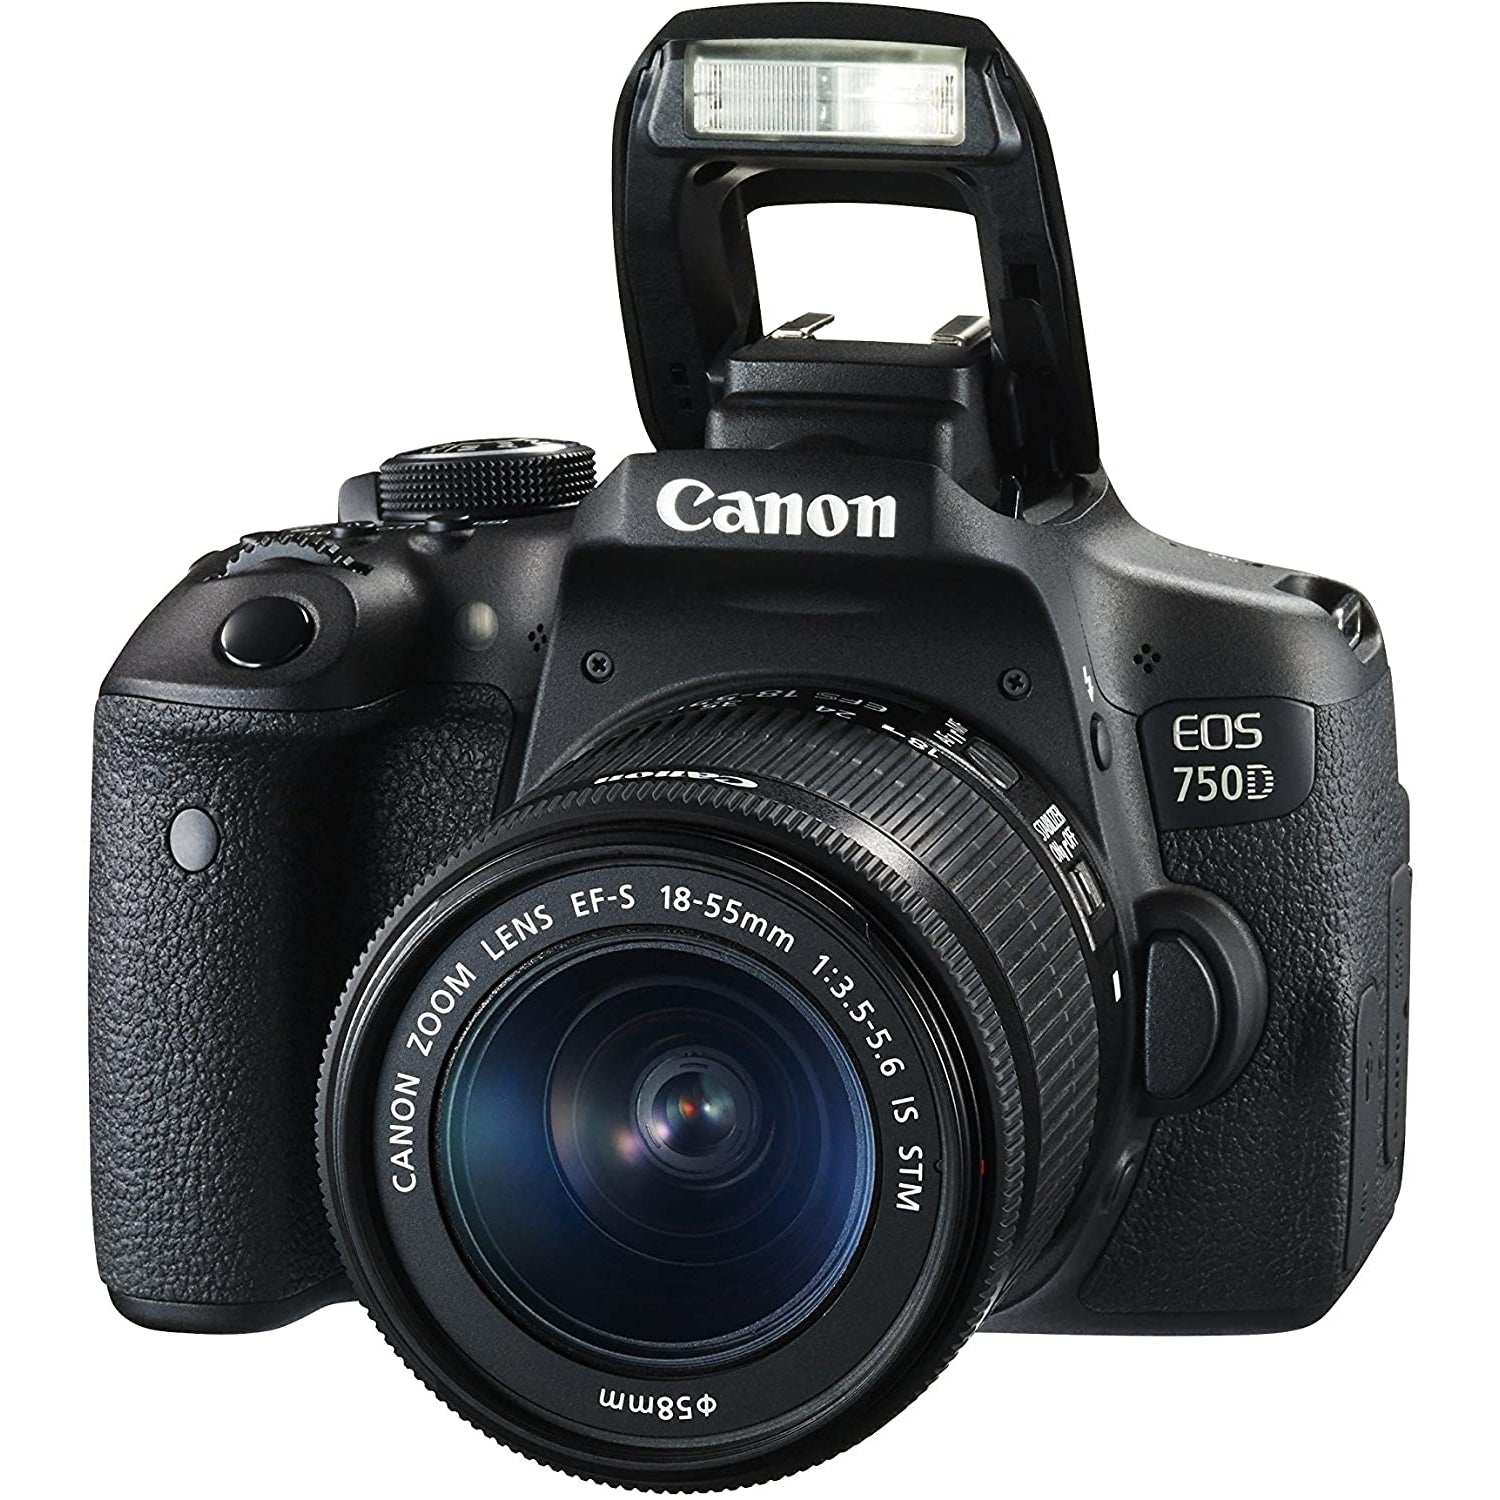 Canon EOS 750D Digital SLR Picture Camera - Black